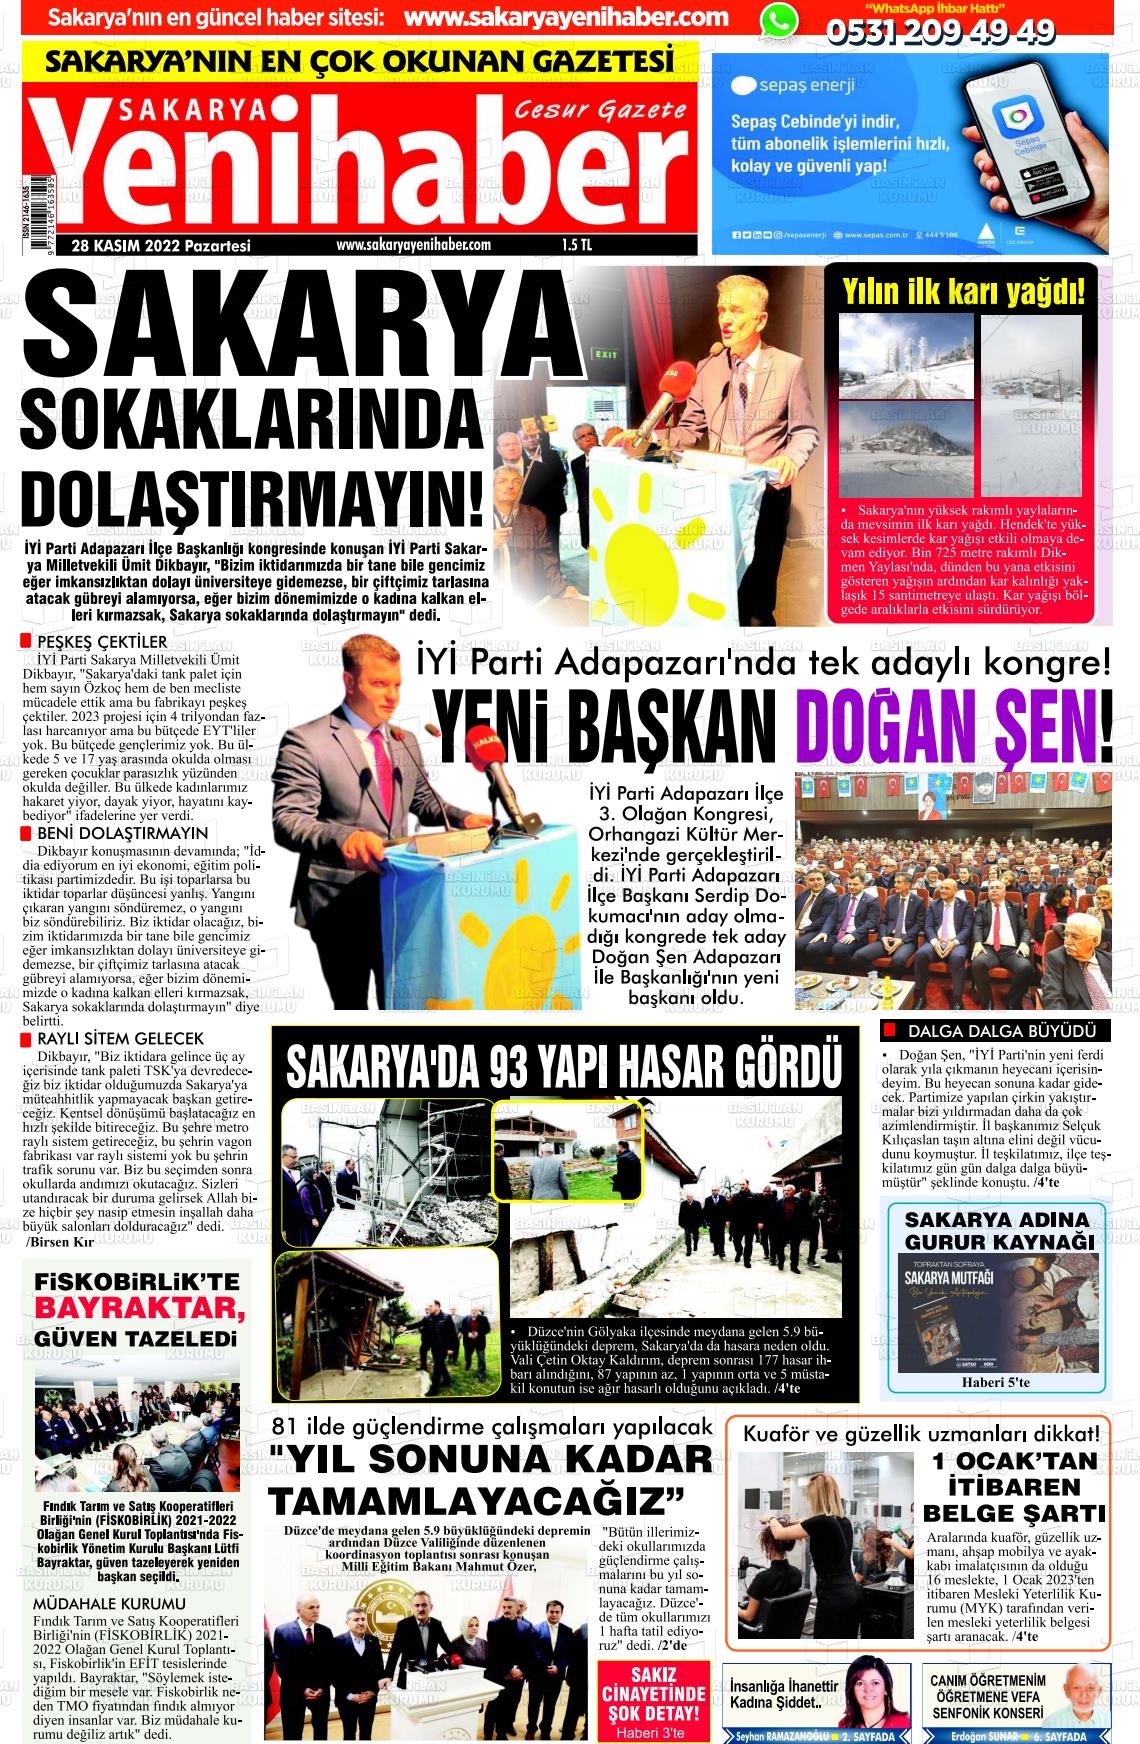 28 Kasım 2022 Sakarya Yeni Haber Gazete Manşeti